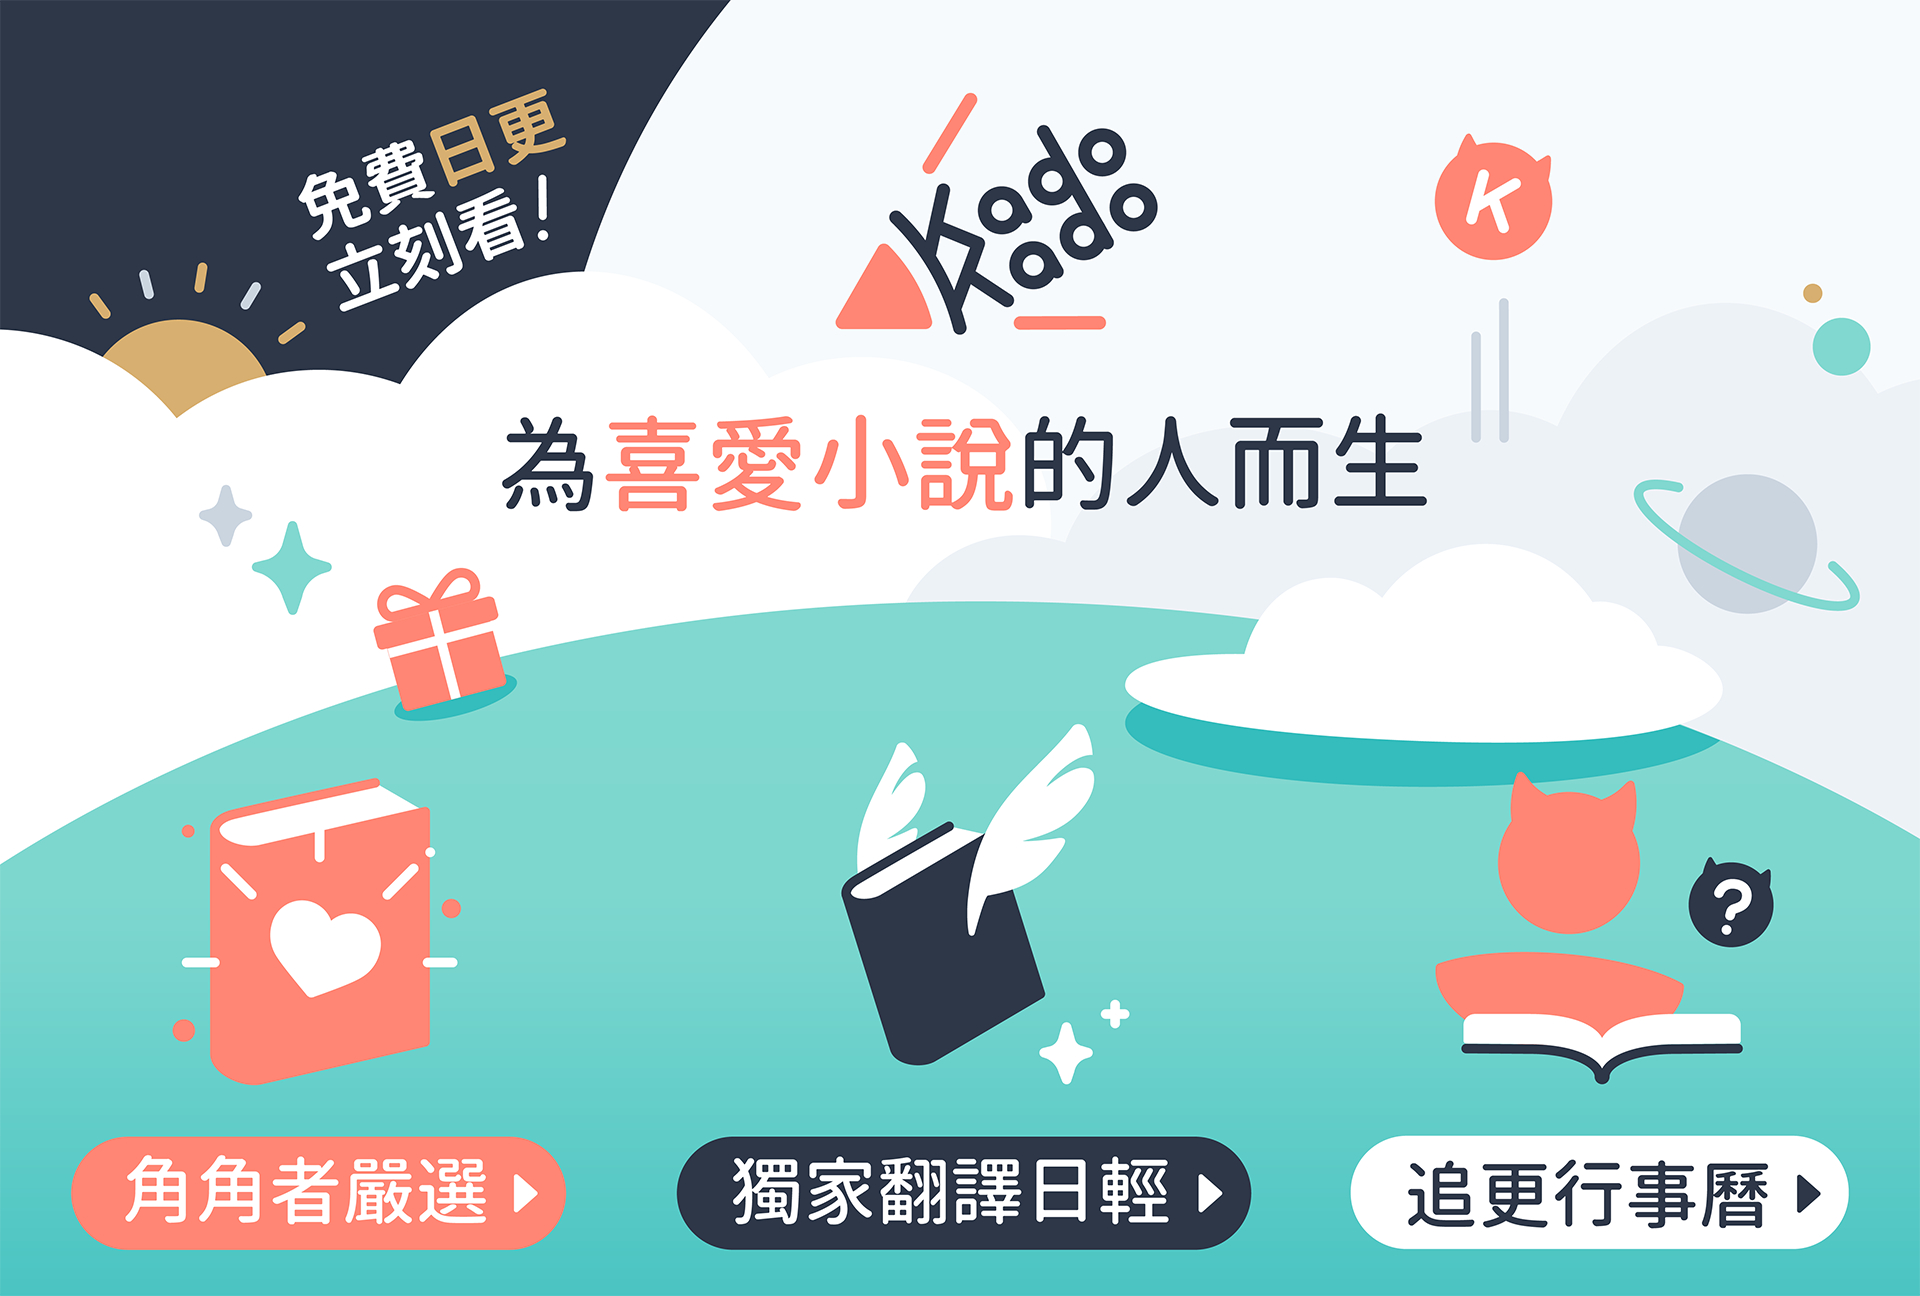 台湾角川の新しい小説連載プラットフォーム「KadoKado 角角者」がサービ ス開始のサブ画像1